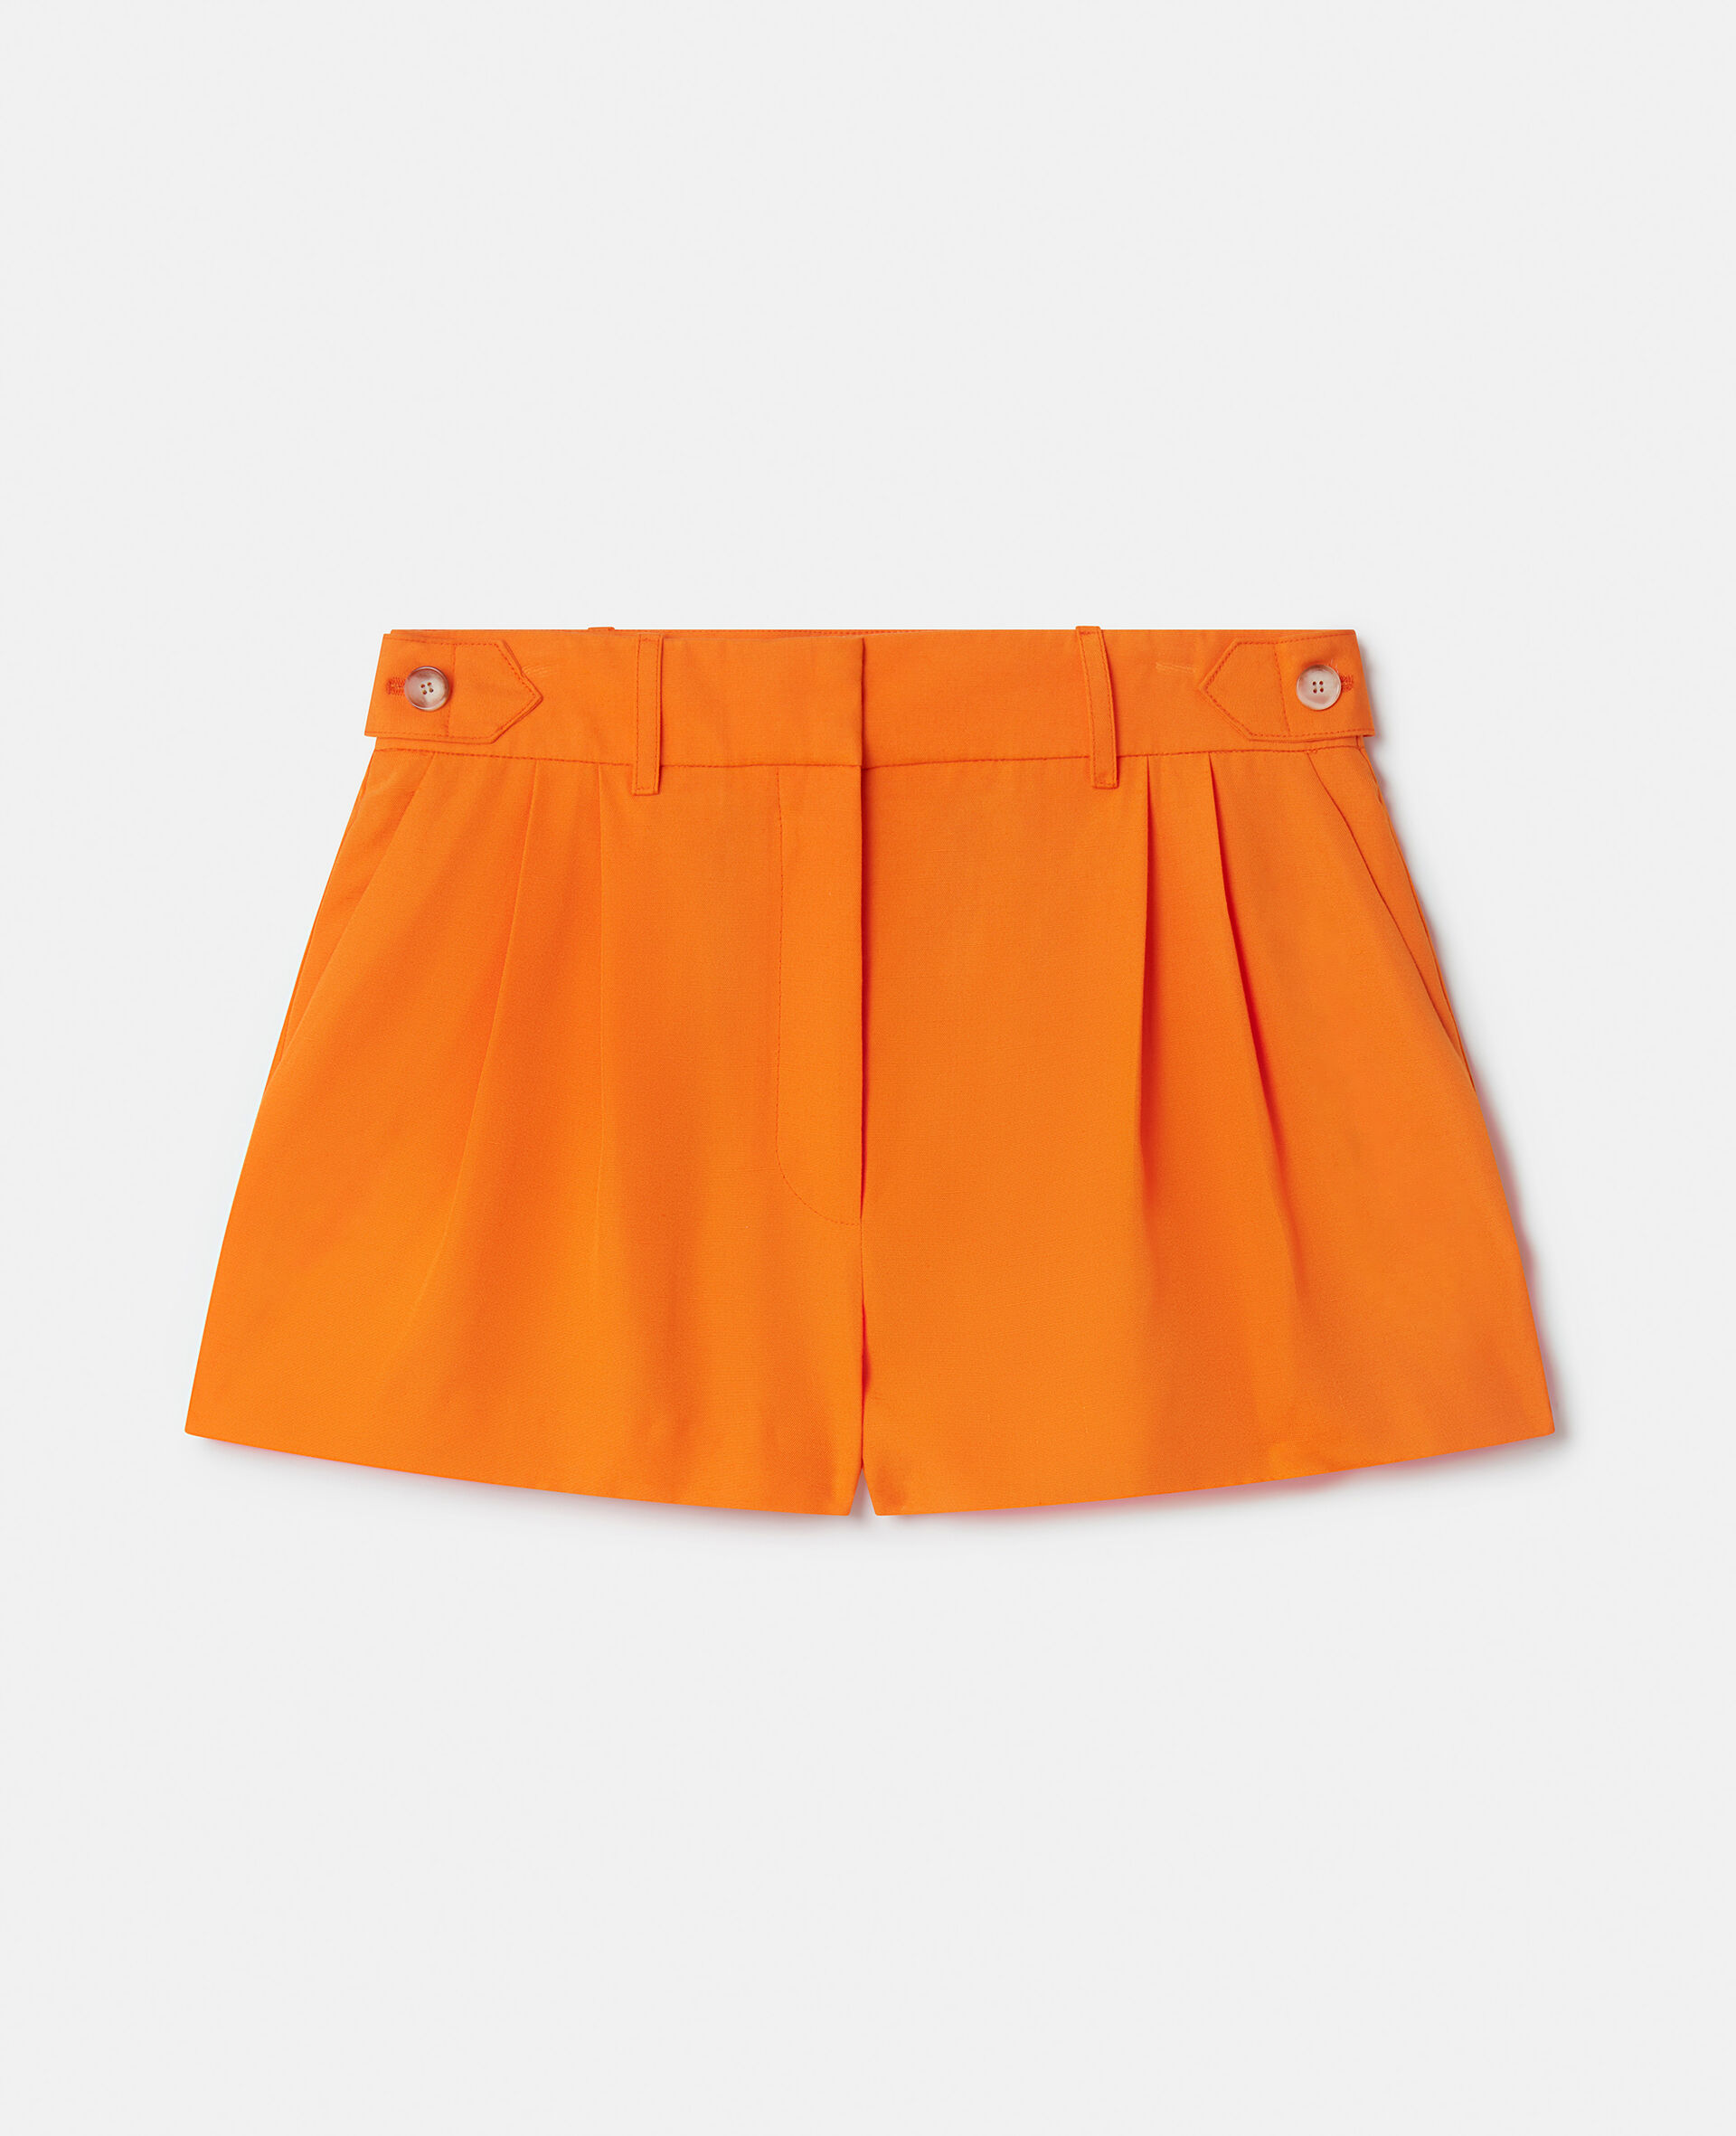 Tailored Shorts-Orange-large image number 0